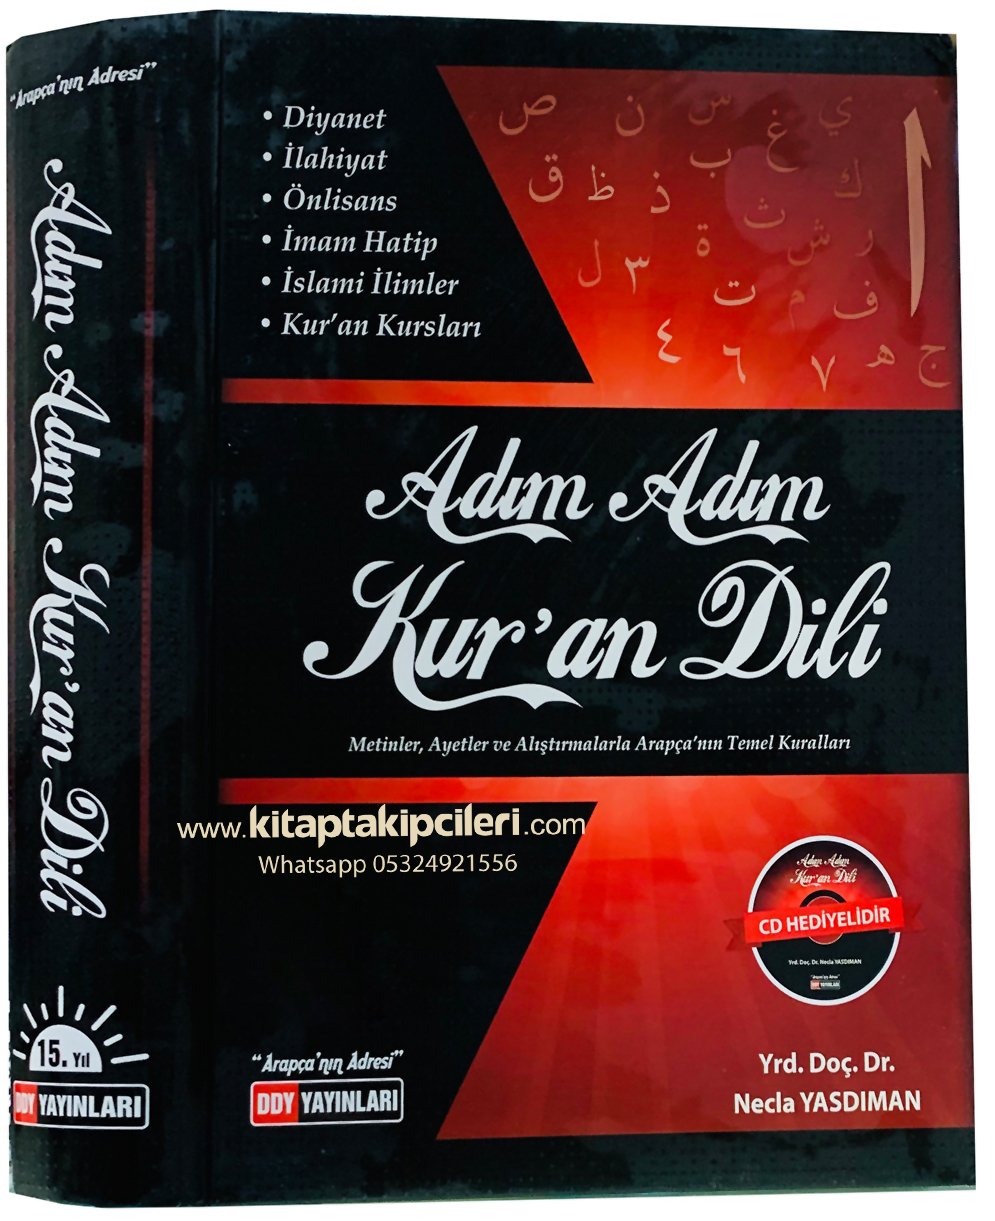 Adım Adım Kuran Dili, Arapçayı Kendi Kendinize de Öğrenebilirsiniz - Dr. Necla Yasdıman, CD İlaveli Büyük Boy Ciltli 800 Sayfa